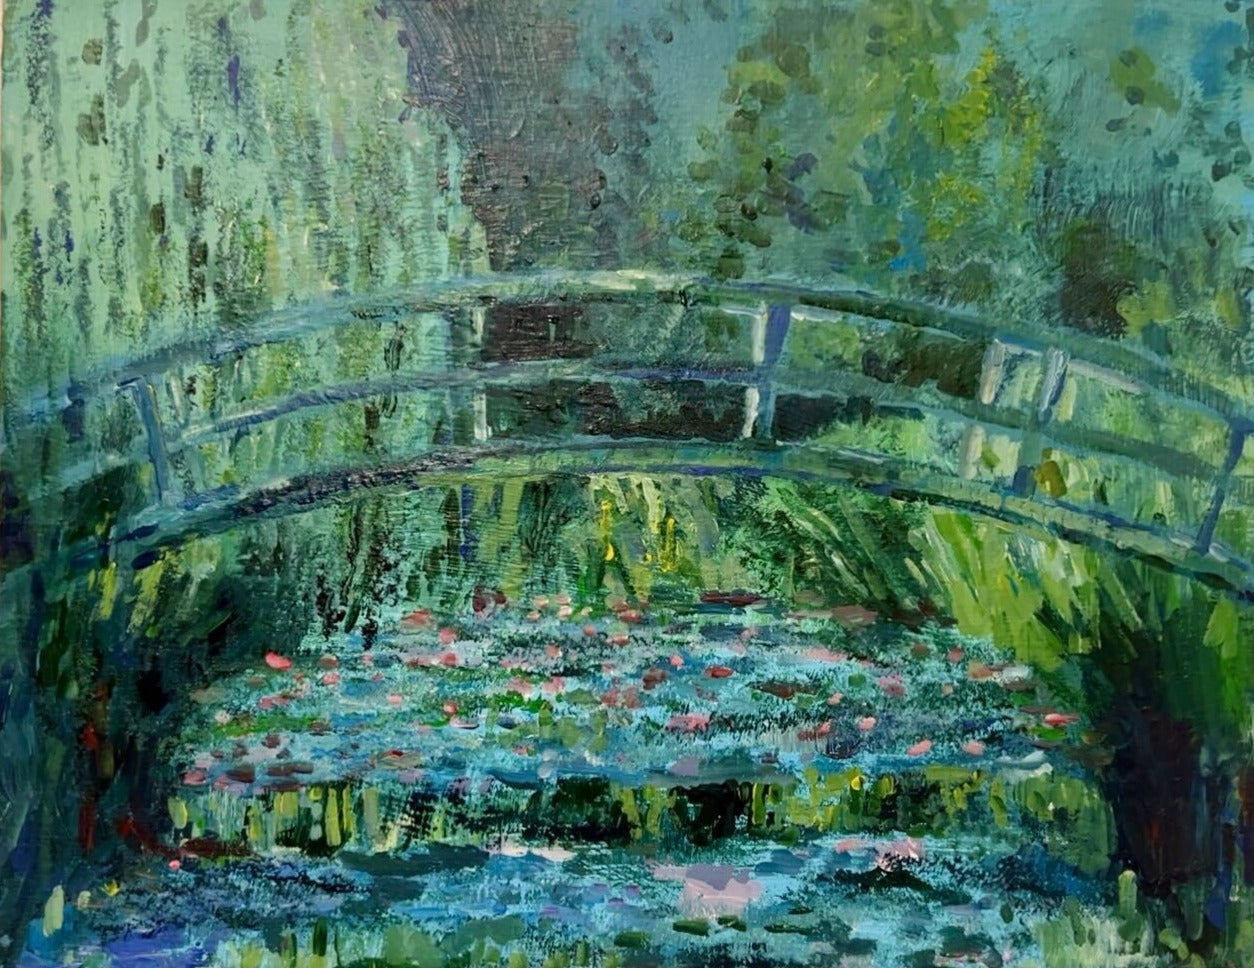 【上野/根津】10月7日(土) 13:00-15:00 | クロード・モネ | ジヴェルニーの日本の橋と睡蓮の池（The Japanese Footbridge and the Water Lily Pool by Claude Monet at Ueno/Nezu）